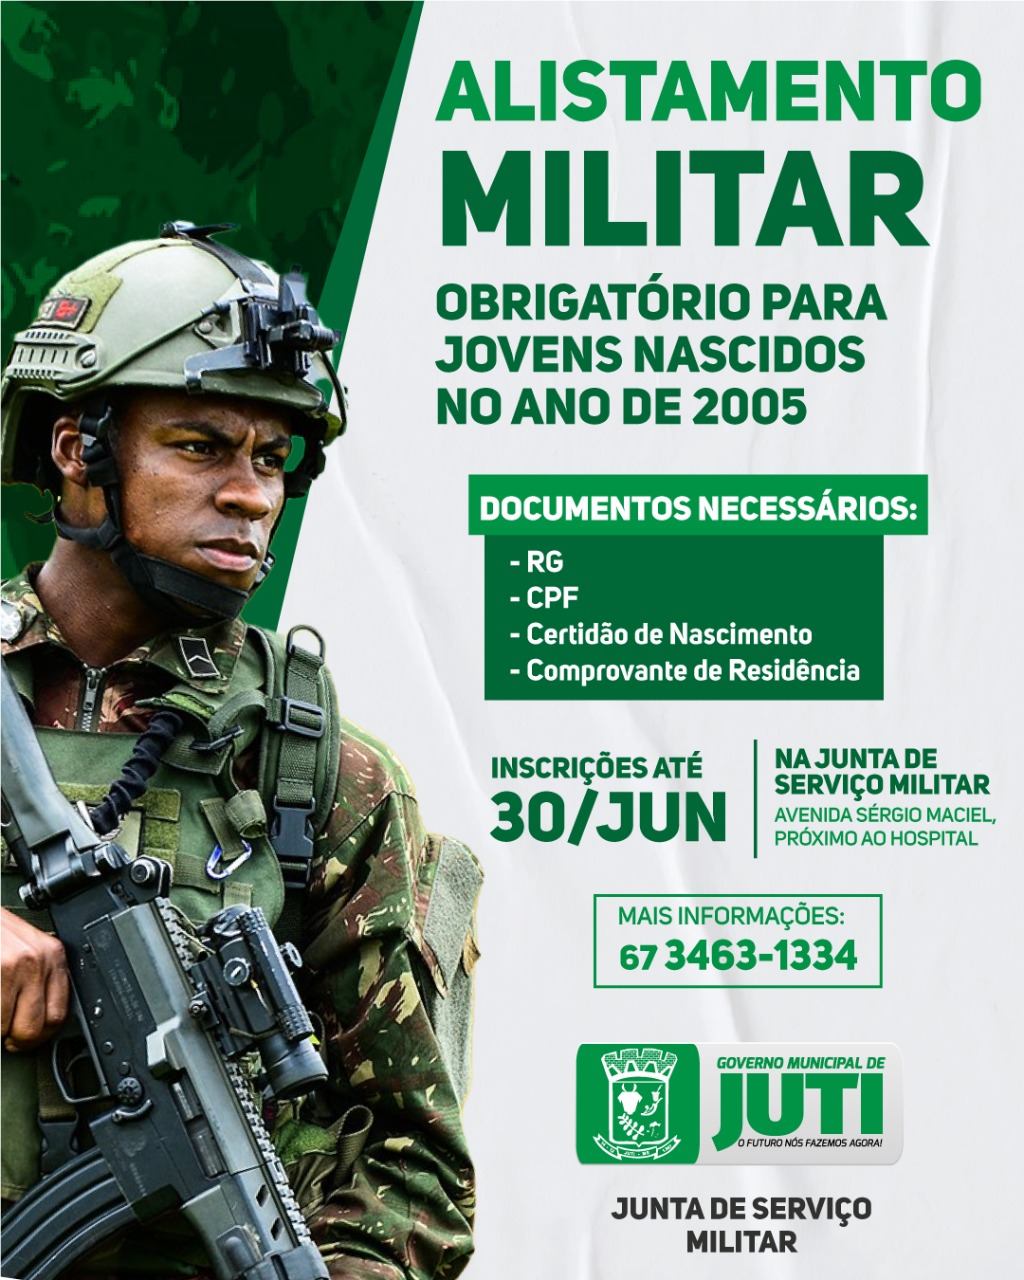 Alistamento militar obrigatório deve ser feito até 30 de junho